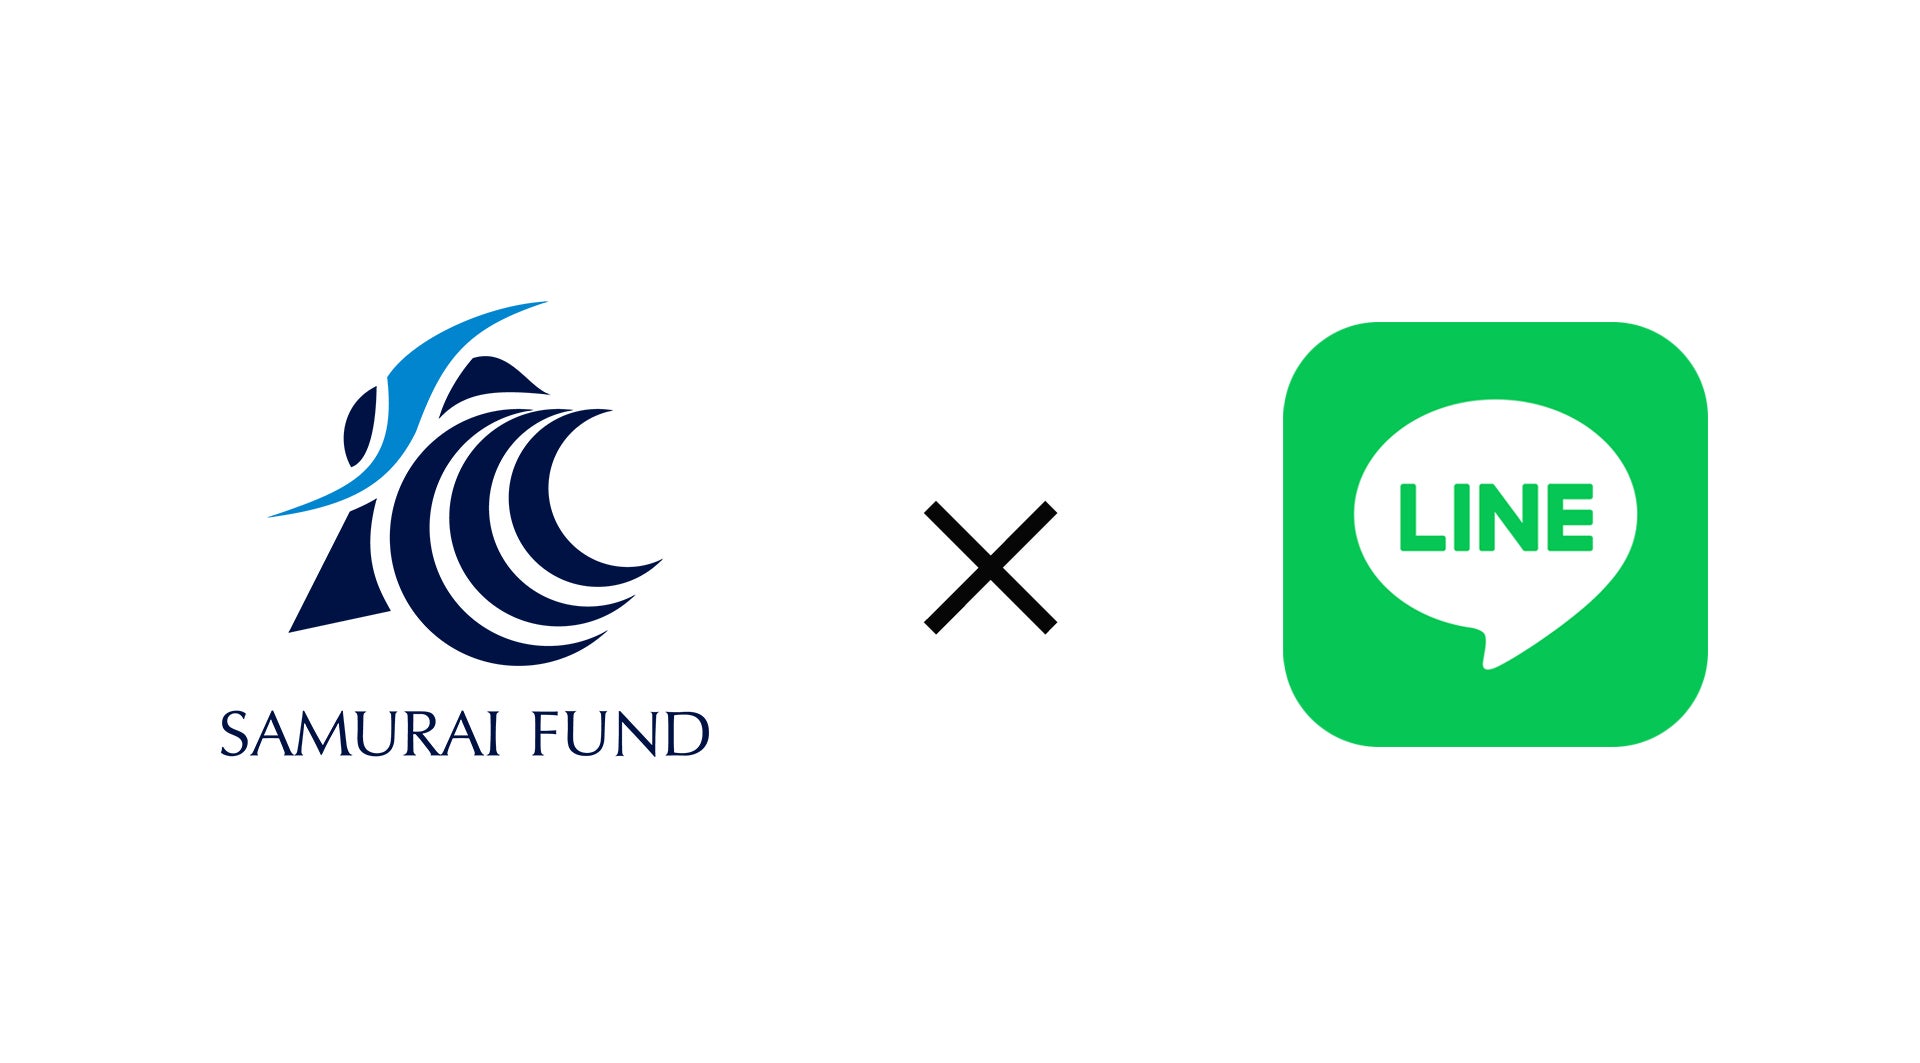 オルタナティブ投資プラットフォーム「SAMURAI FUND」、LINE公式アカウントを開設